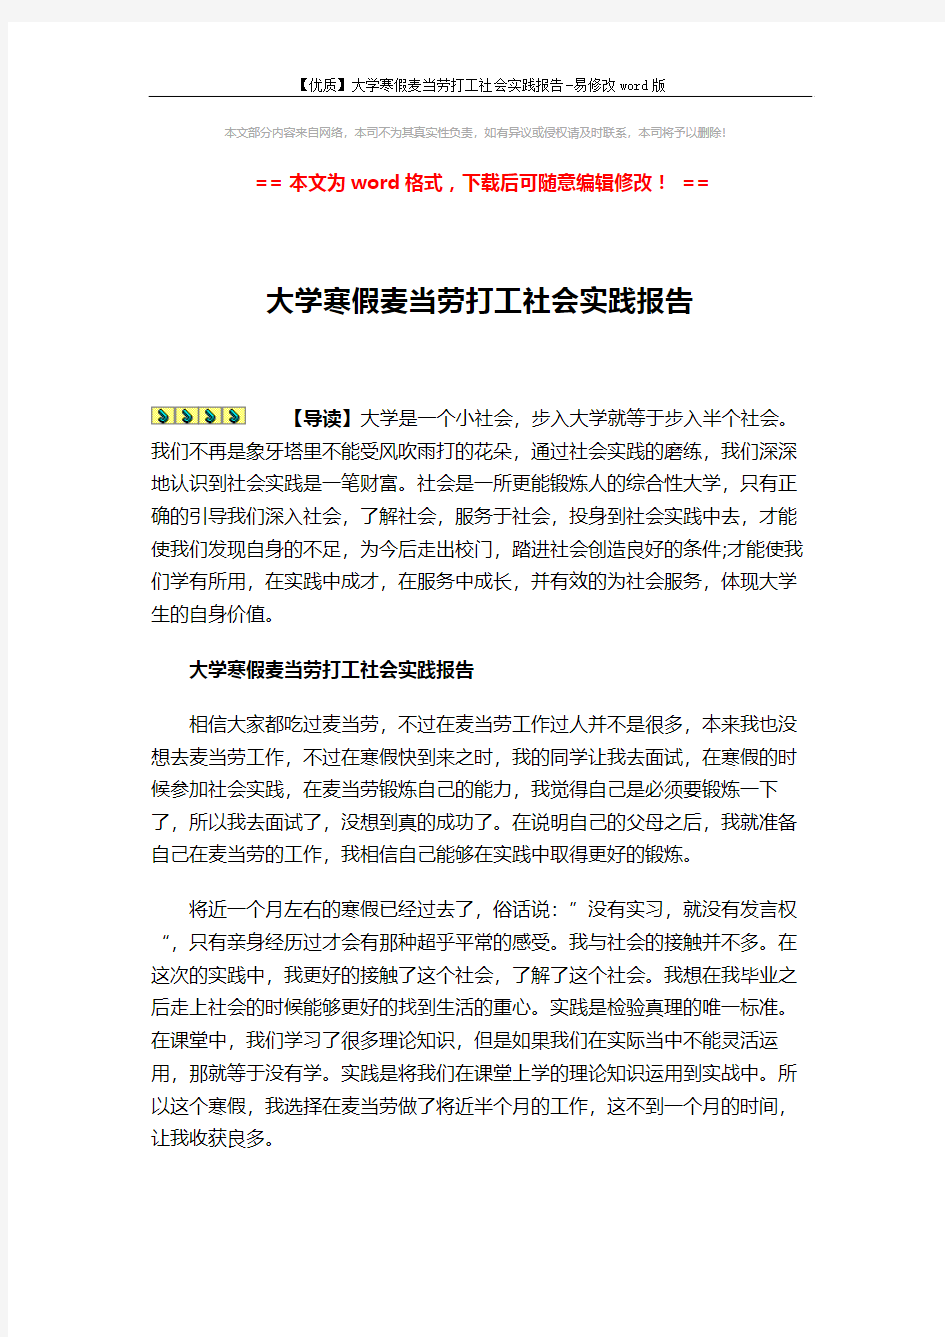 【优质】大学寒假麦当劳打工社会实践报告-易修改word版 (3页)